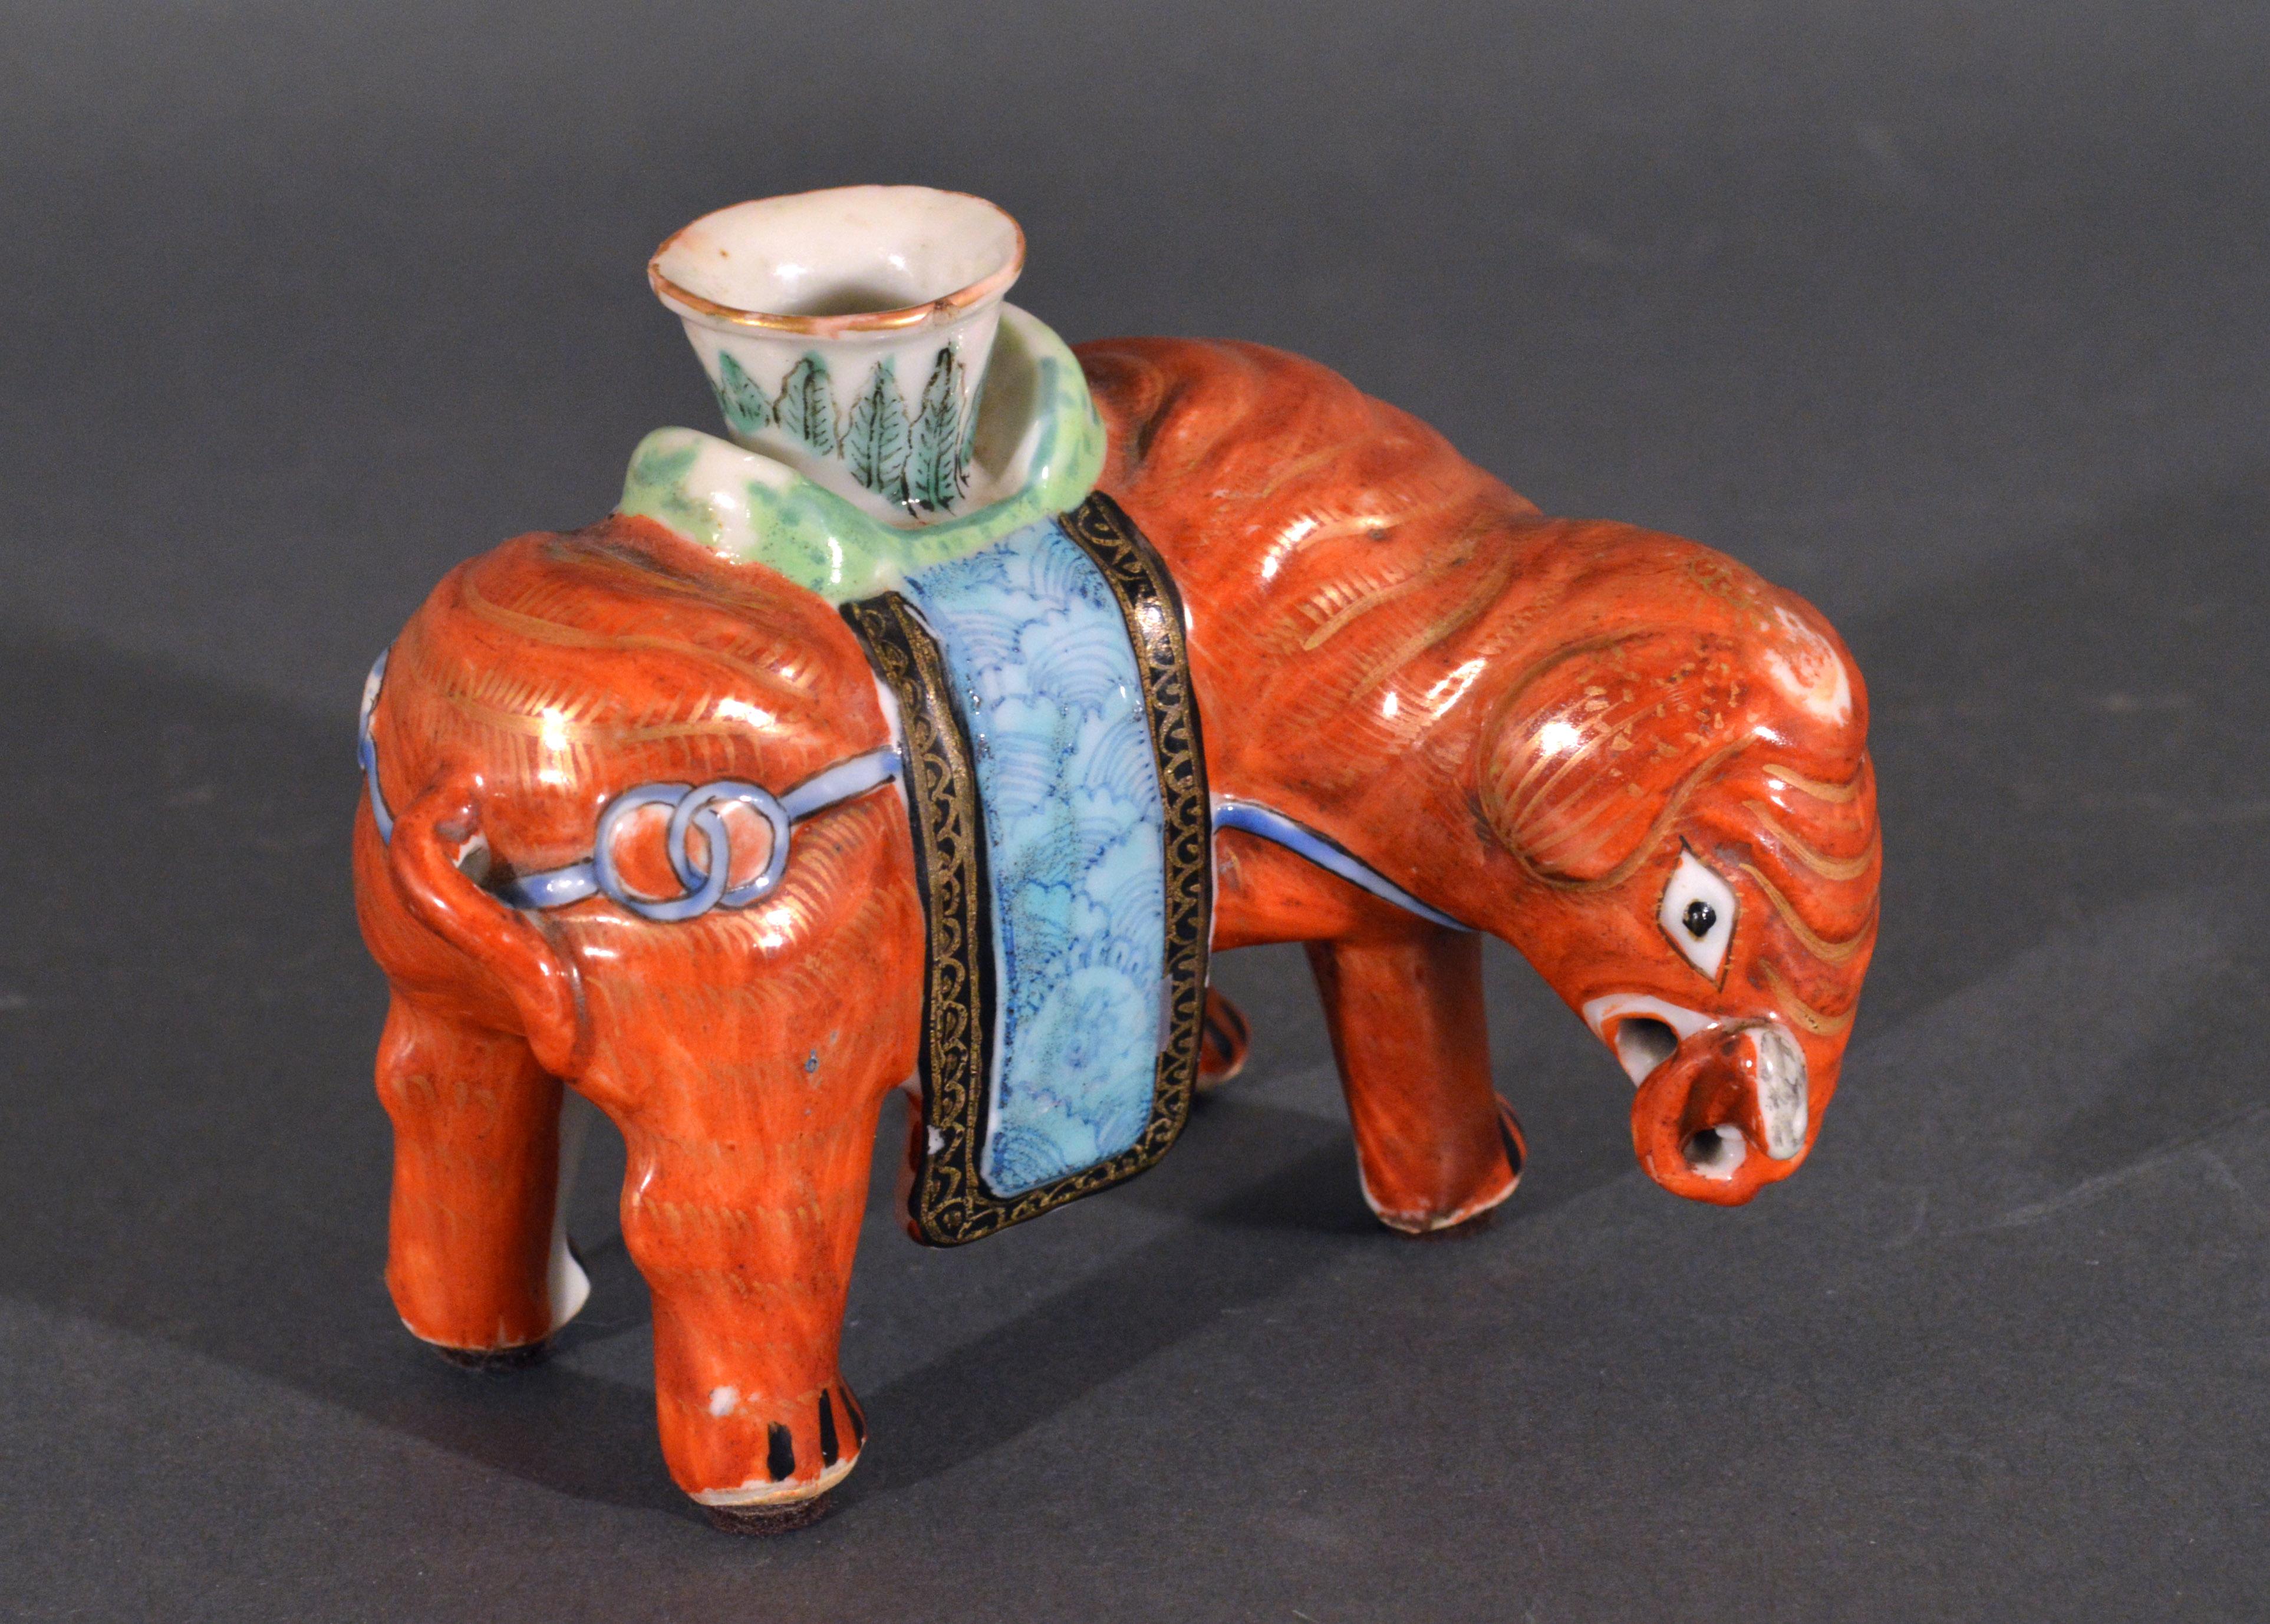 Porcelaine d'exportation chinoise petit canton famille rose éléphant modelé comme un chandelier,
vers 1860 

L'éléphant debout en porcelaine d'exportation chinoise, la trompe relevée, est peint en rouge fer avec des décorations dorées. Au dos, un